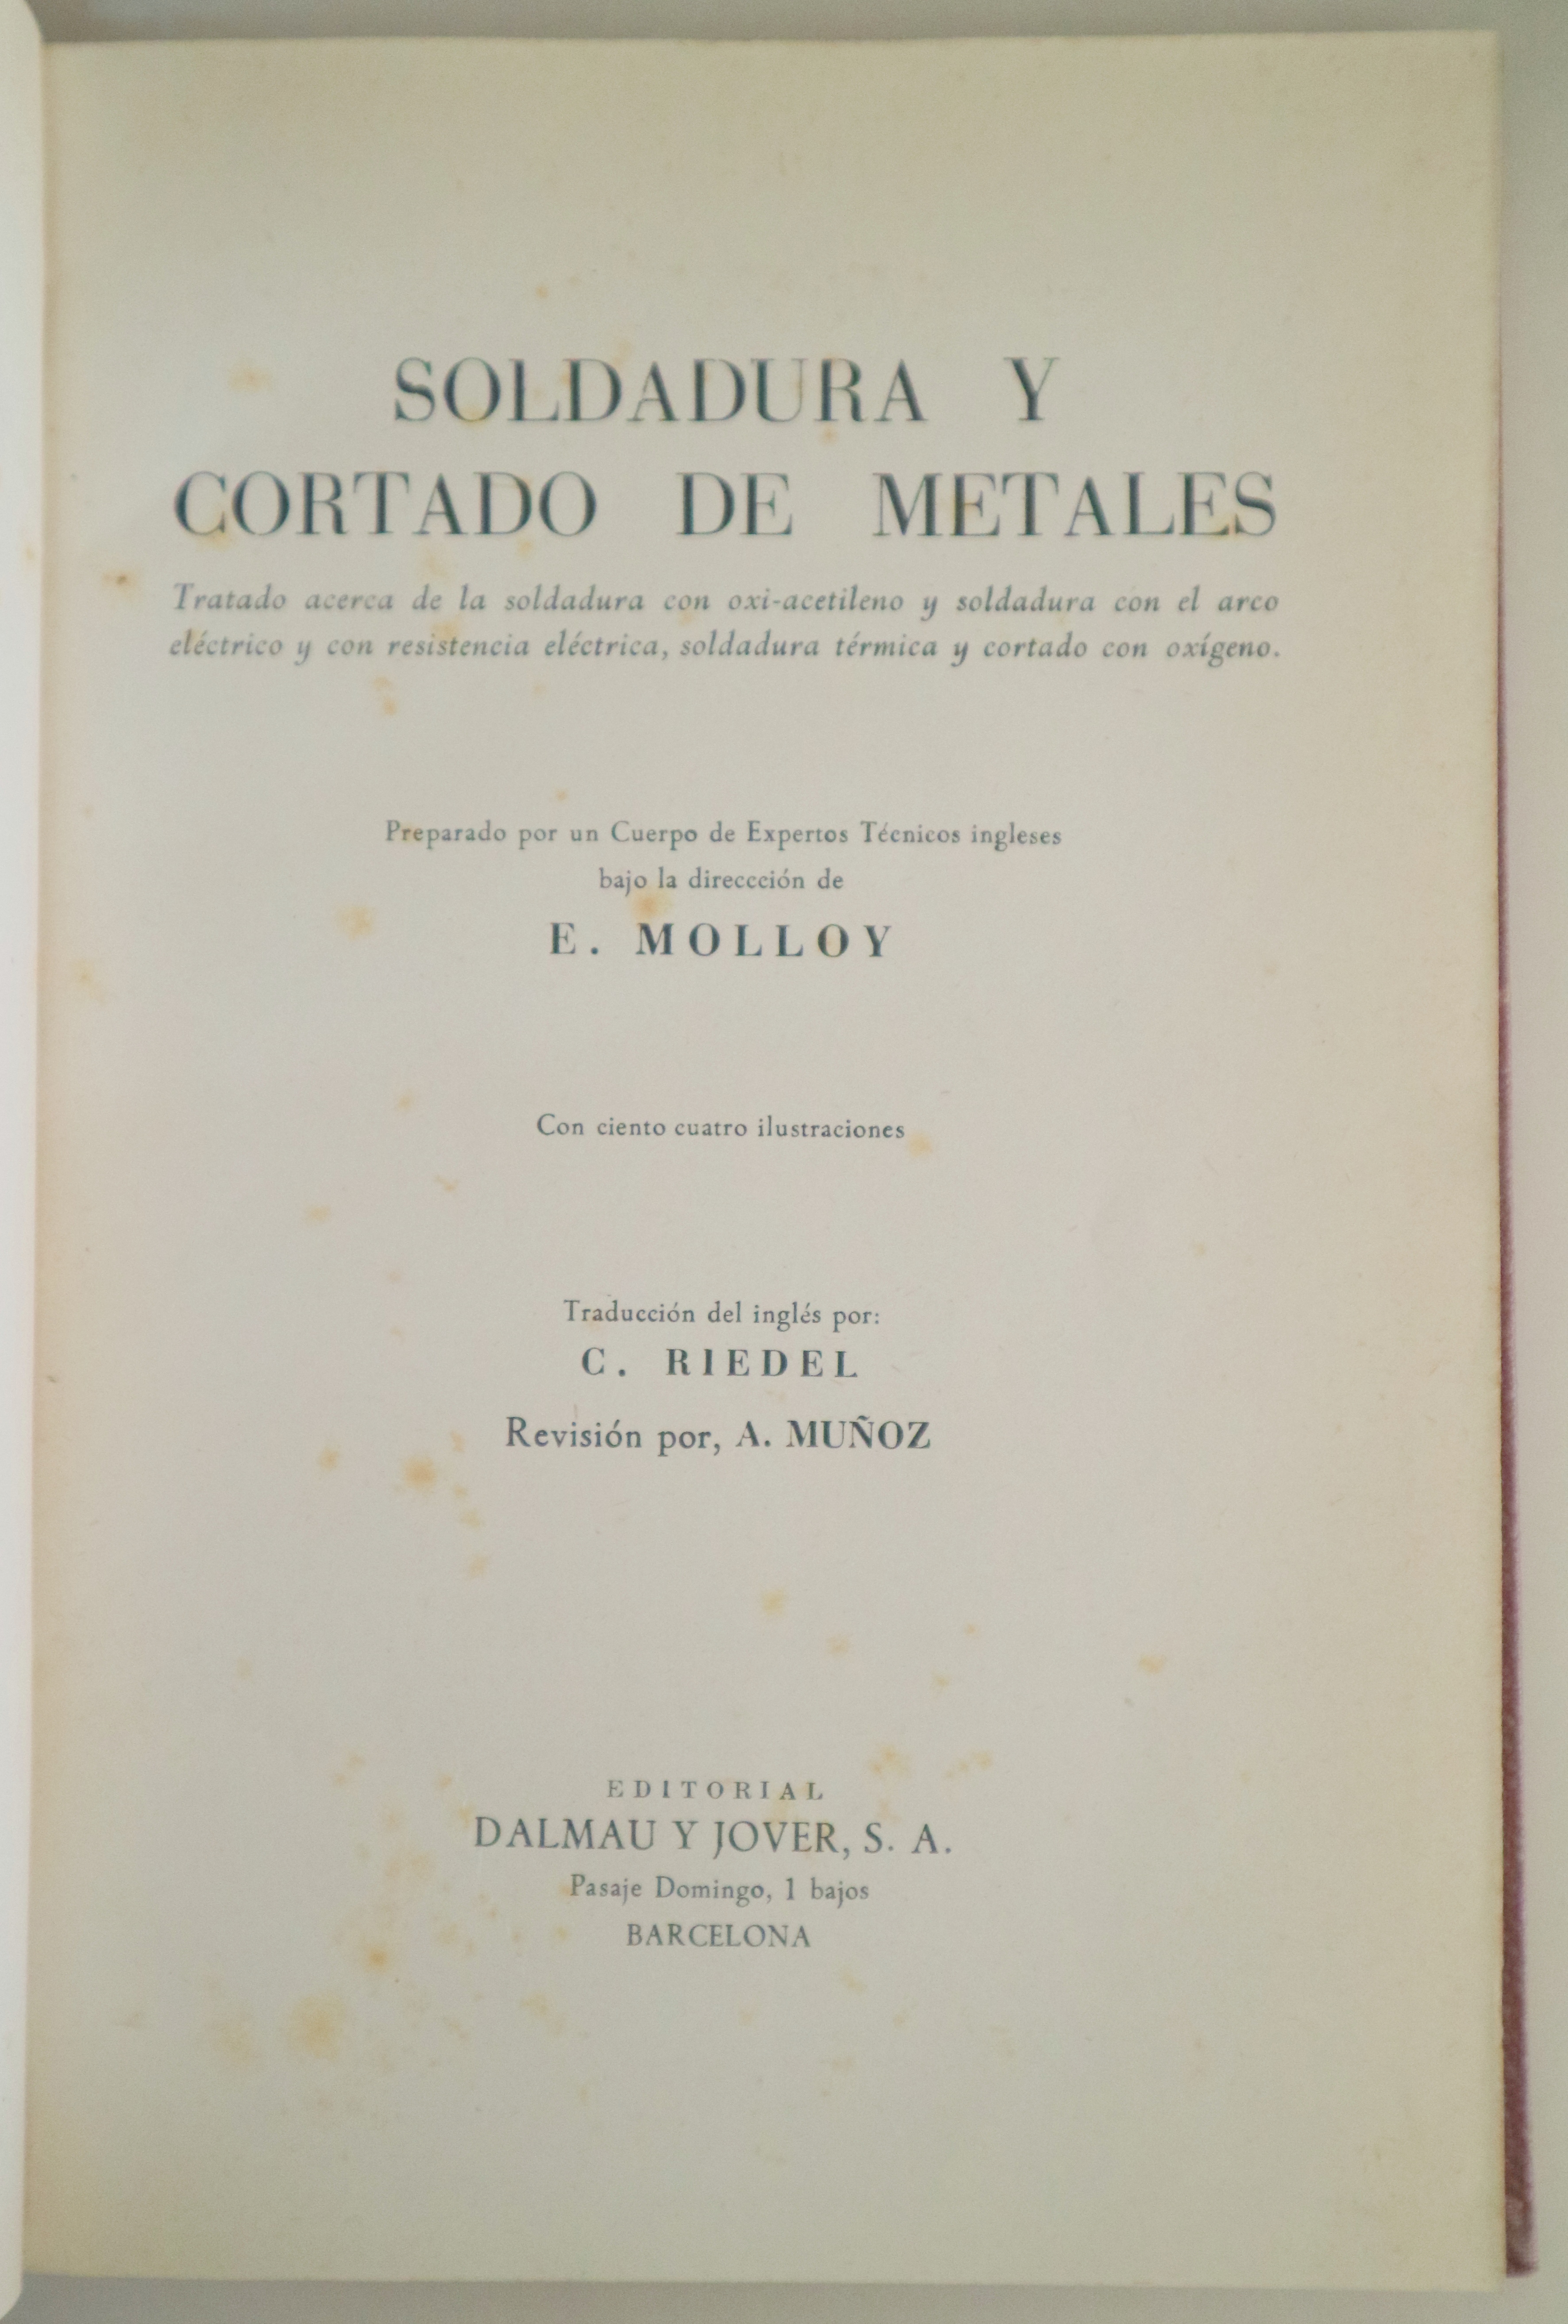 SOLDADURA Y CORTADO DE METALES - Barcelona 1955 - Muy ilustrado